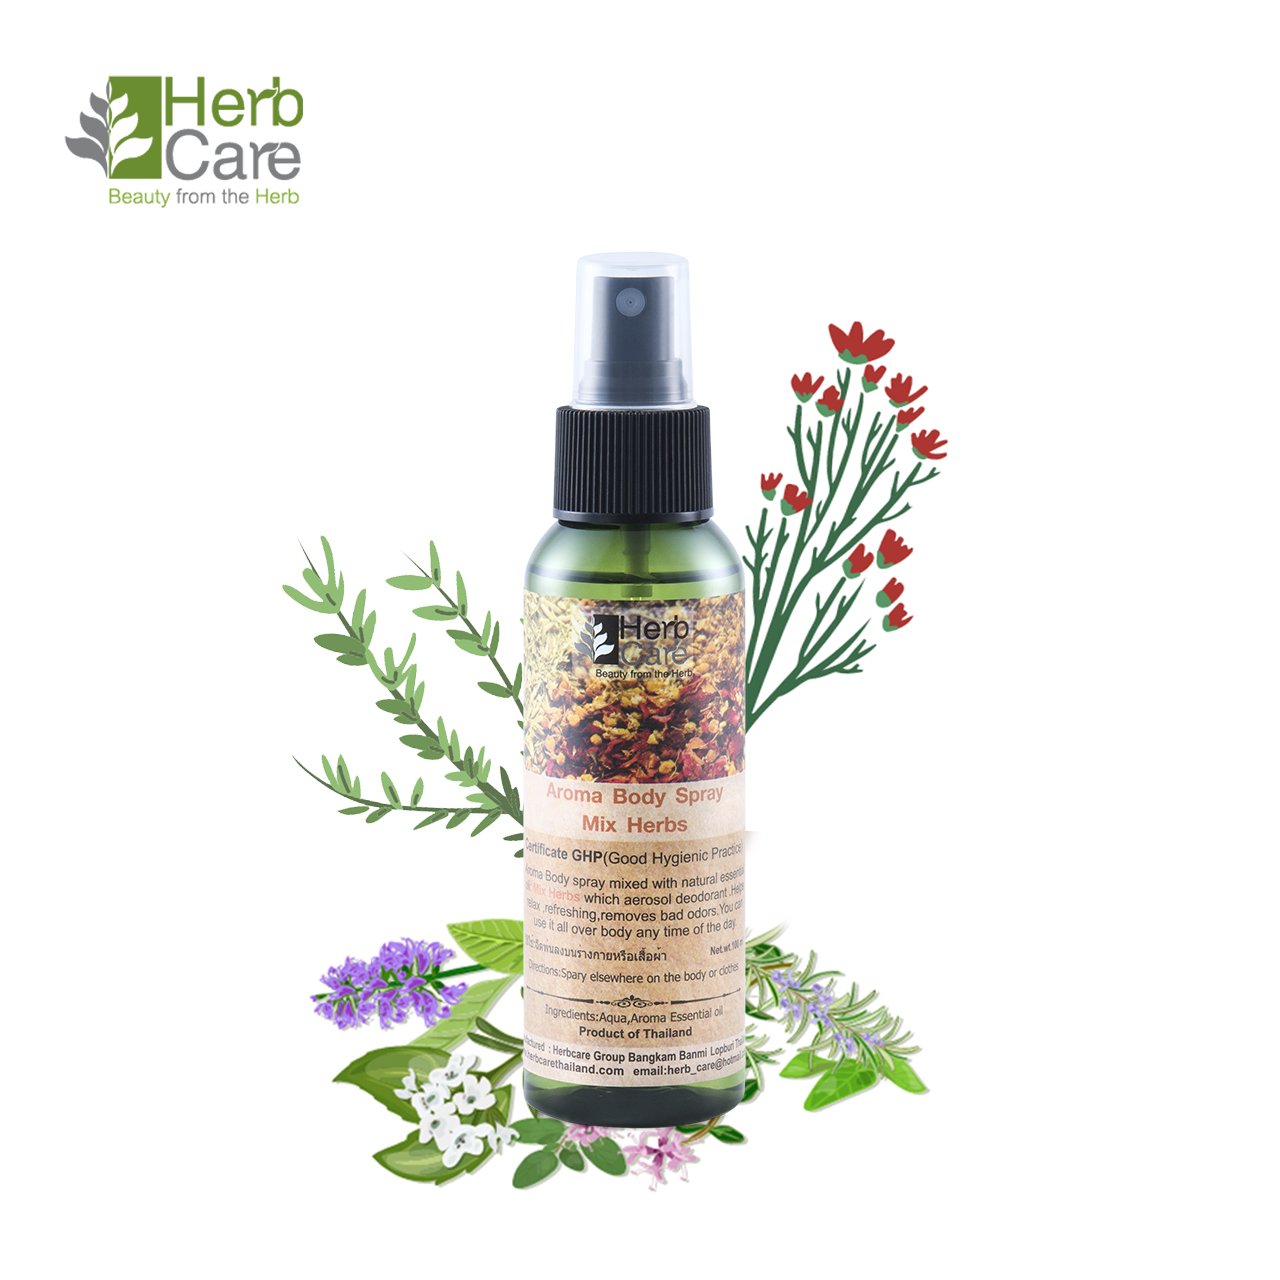 Mixed Herbs : Aroma Body Spray